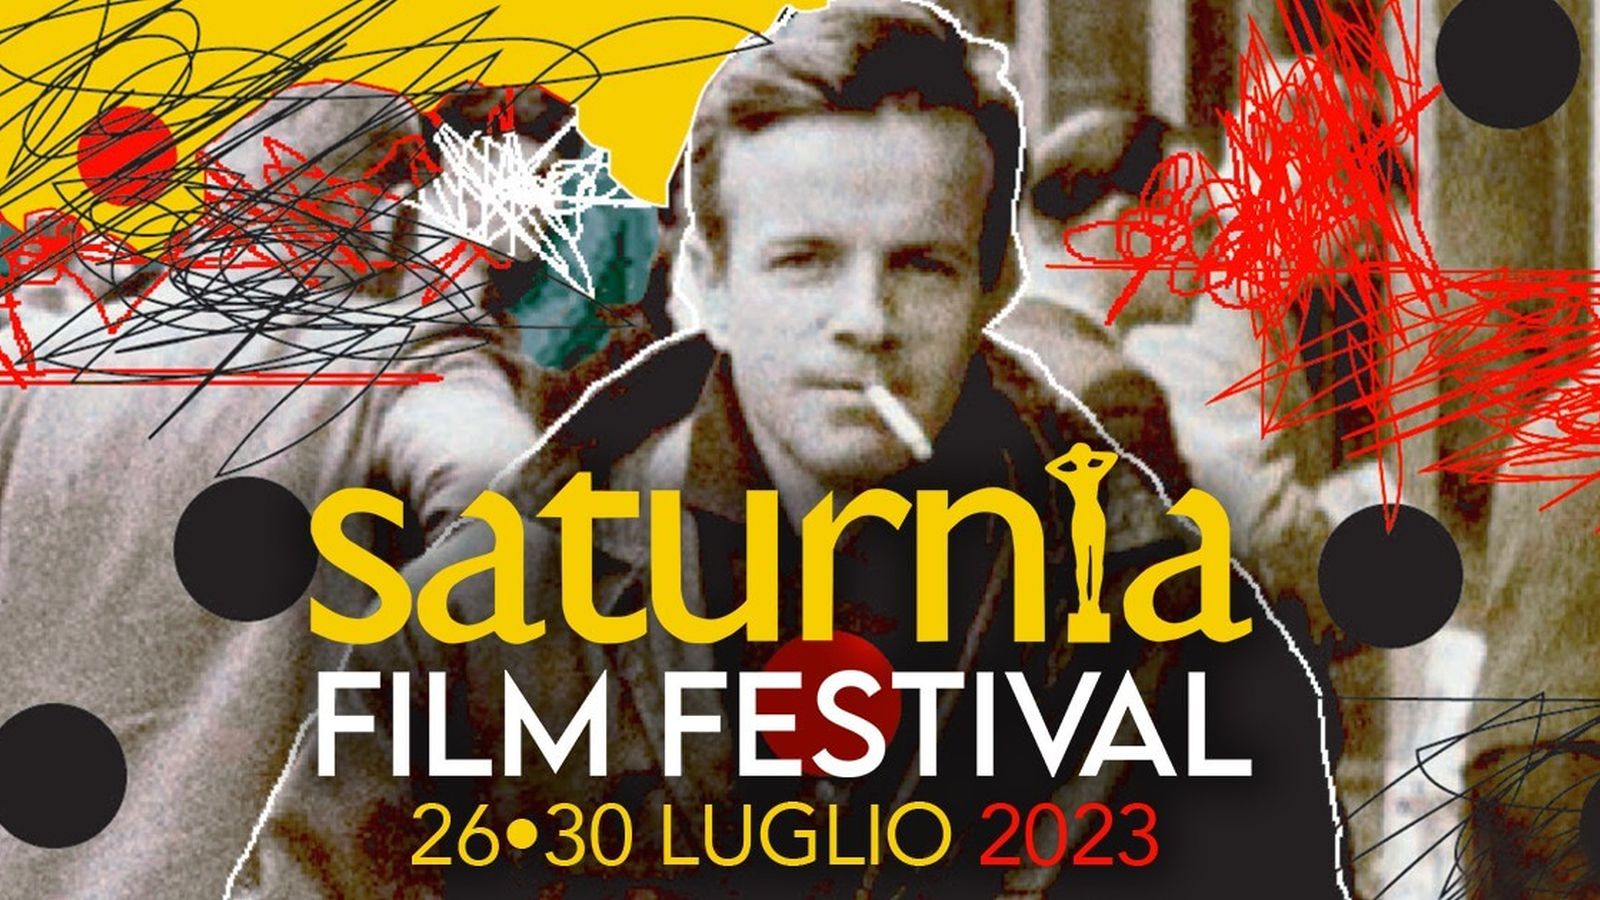 Saturnia Film Festival 2023: il programma della nuova edizione, dedicata a Franco Zeffirelli